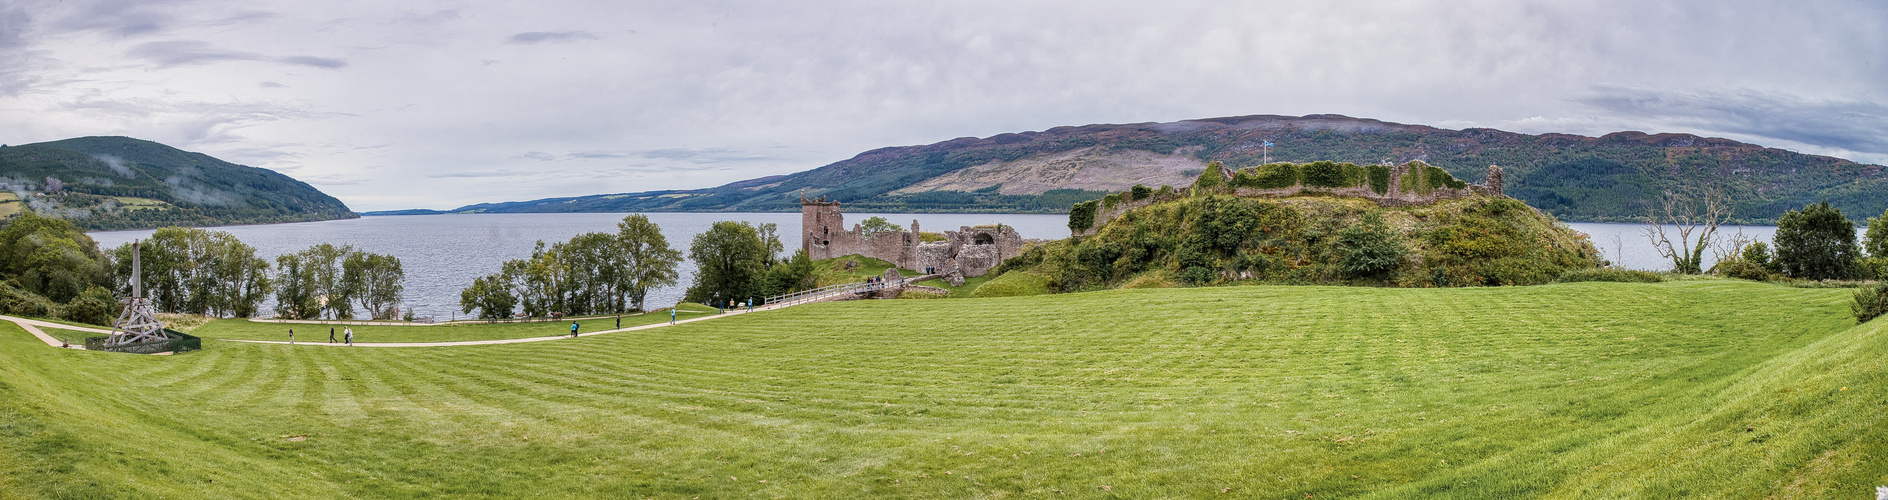 Urquhart Castle u Loch Ness